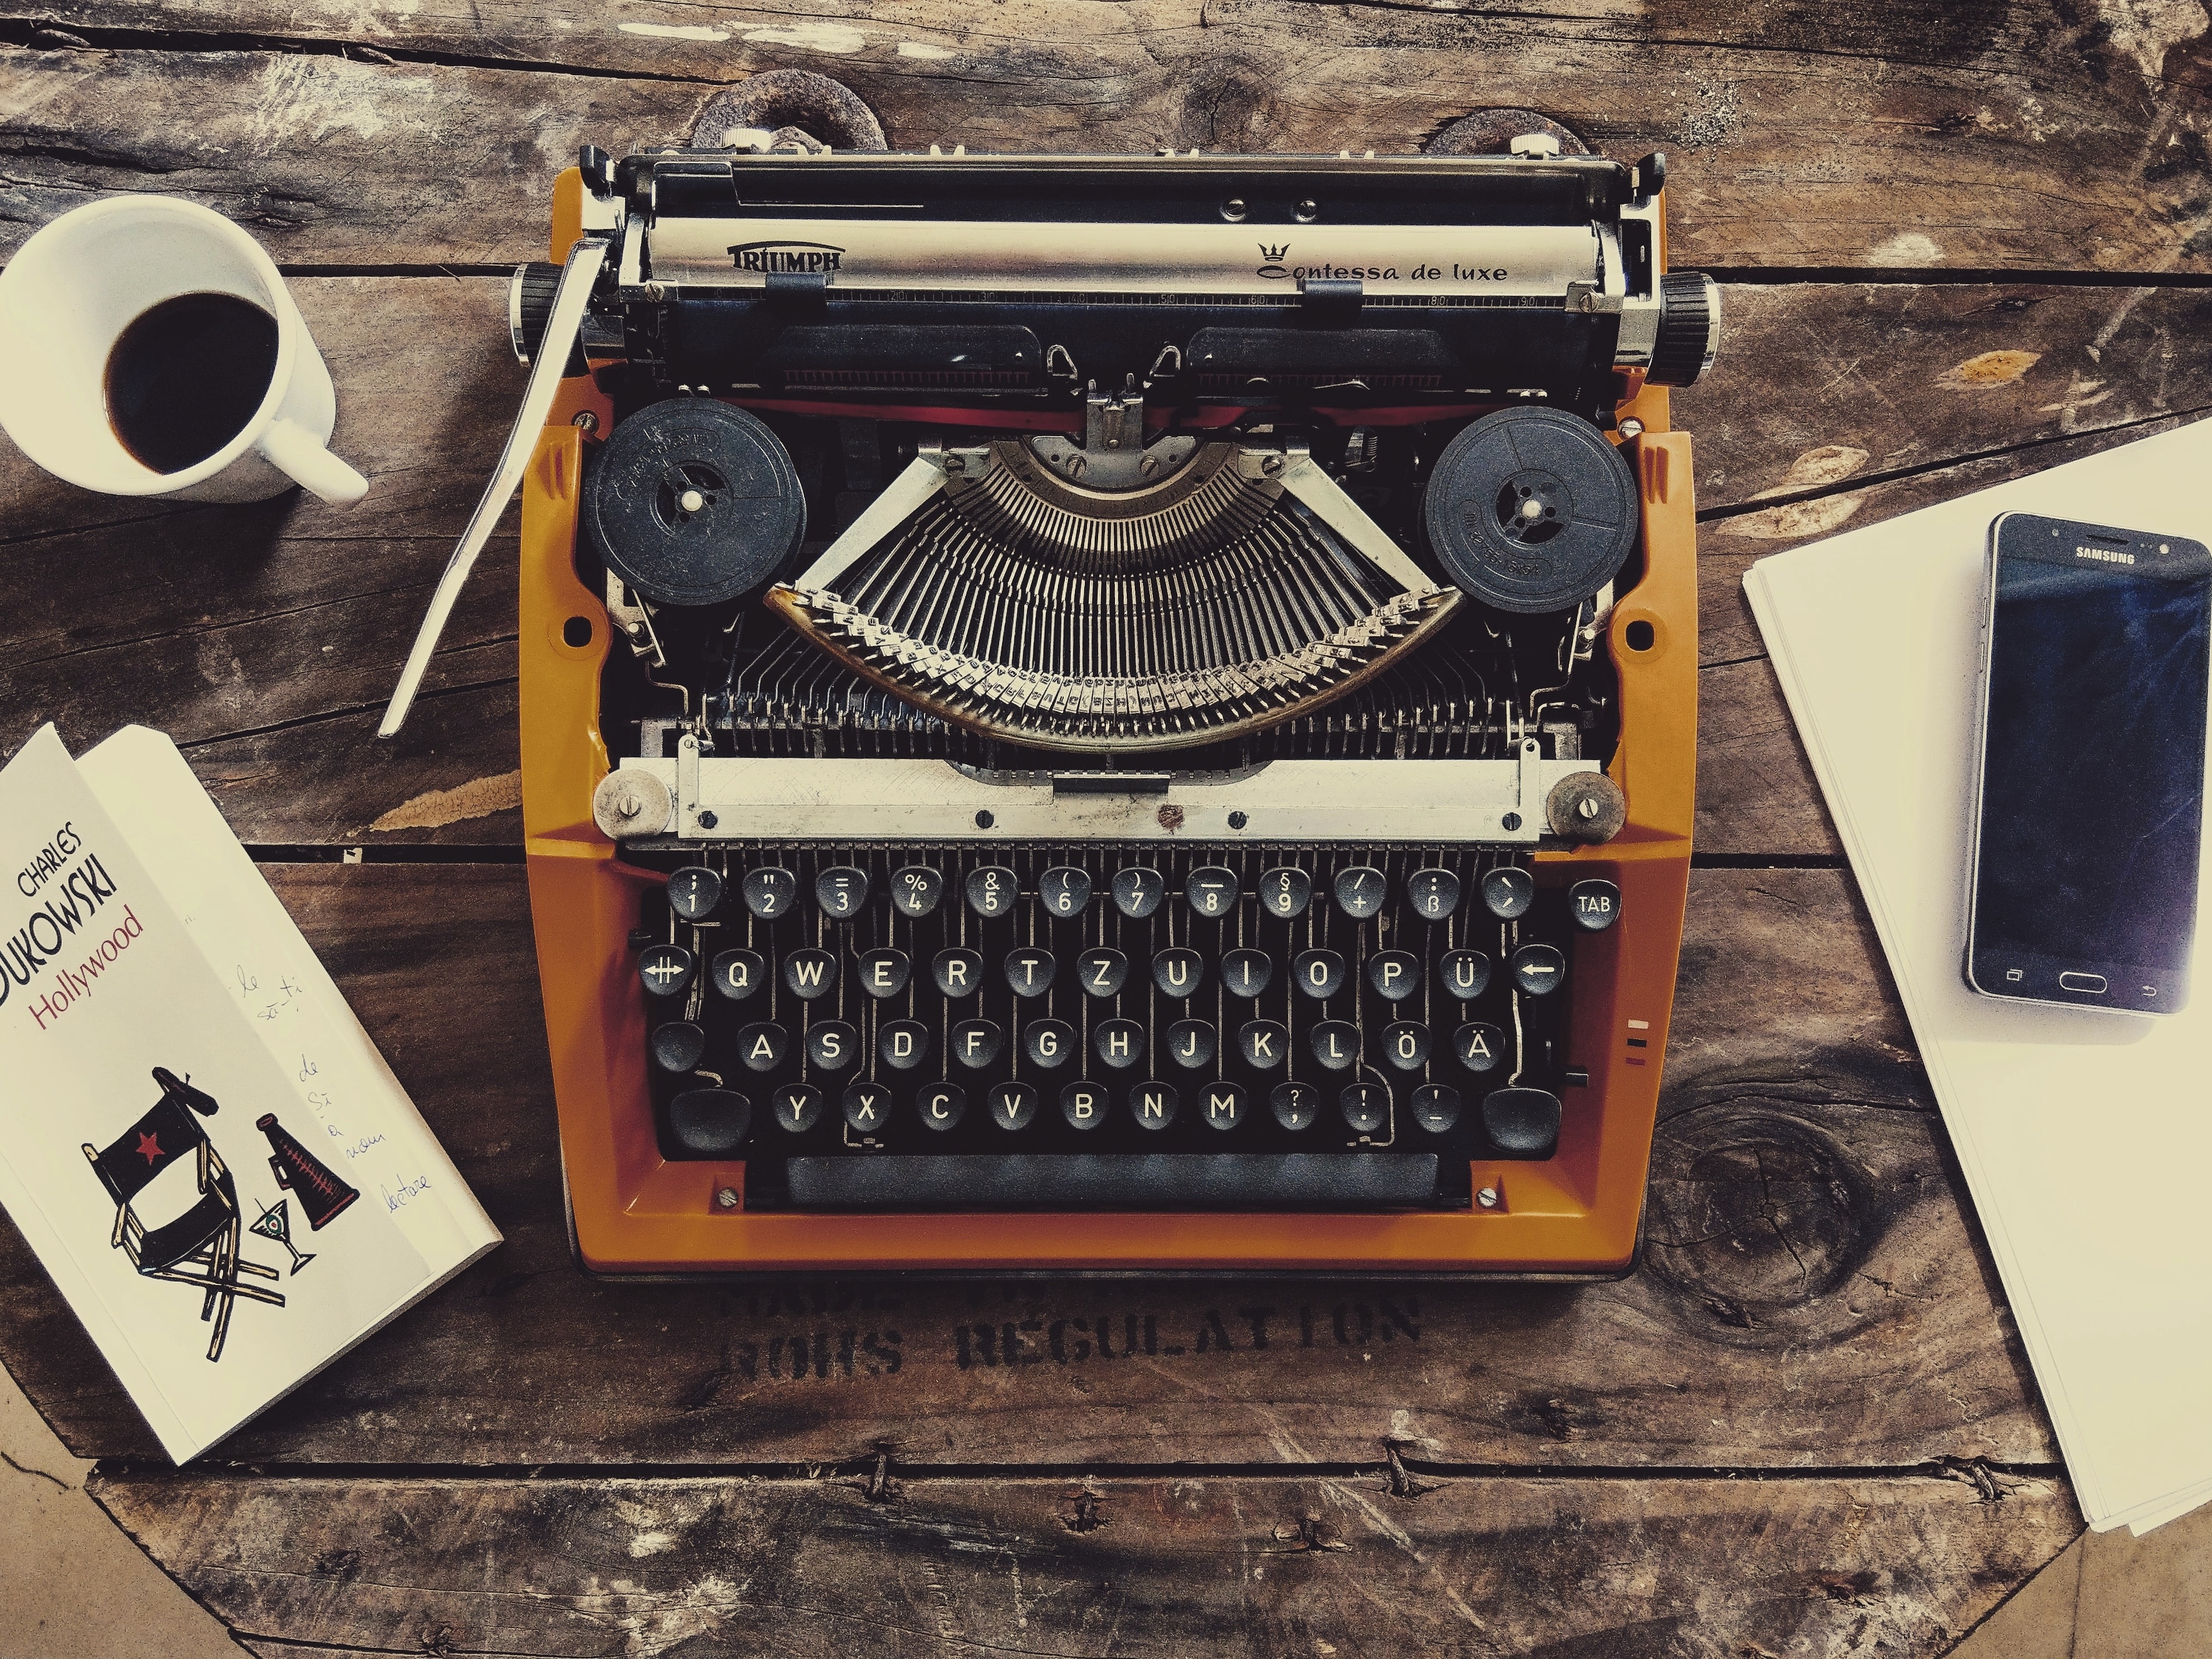 Écriture = Une superbe machine à écrire